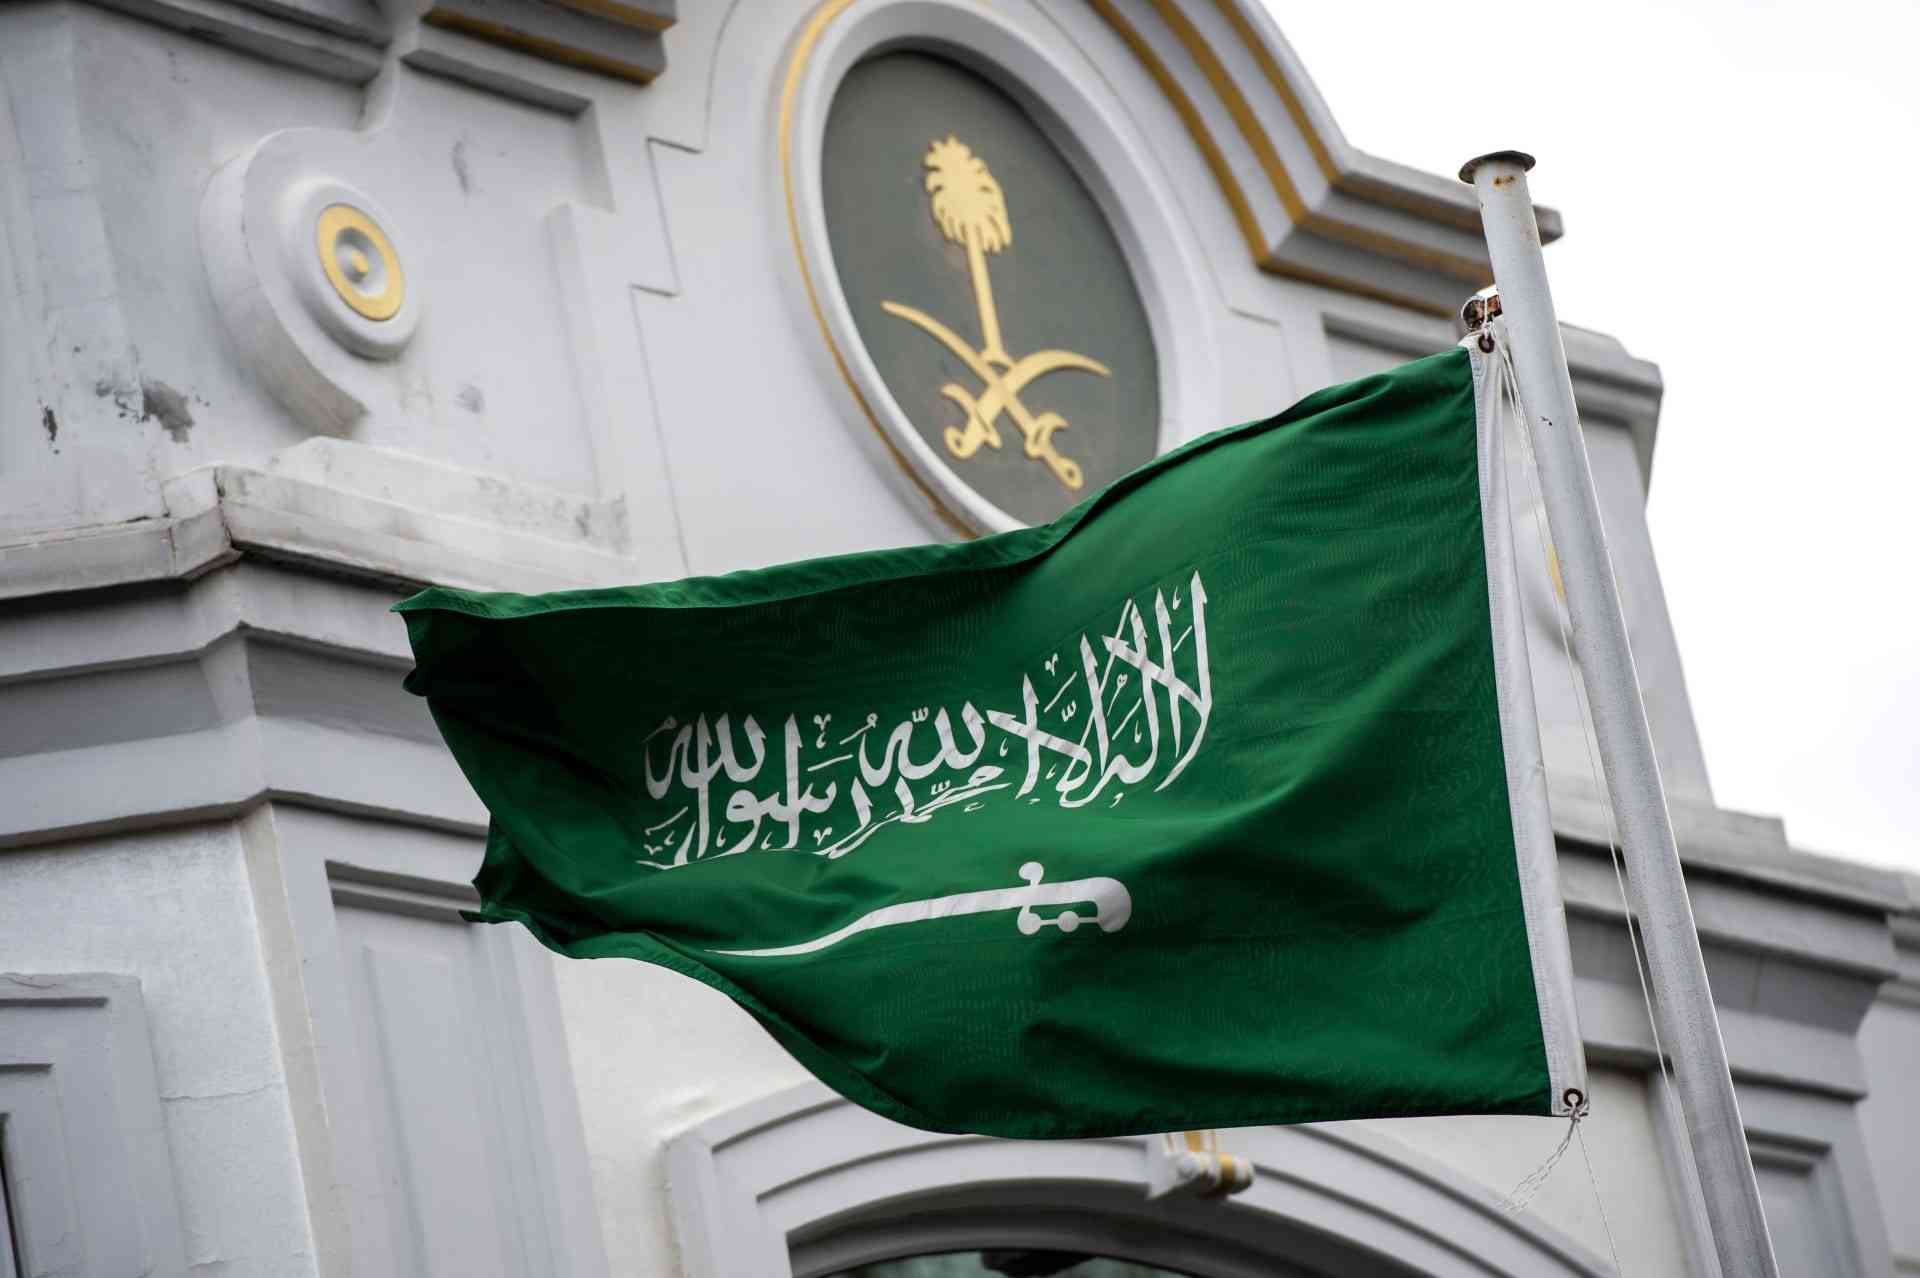 السعودية توجه دعوة لجميع المسلمين في المملكة